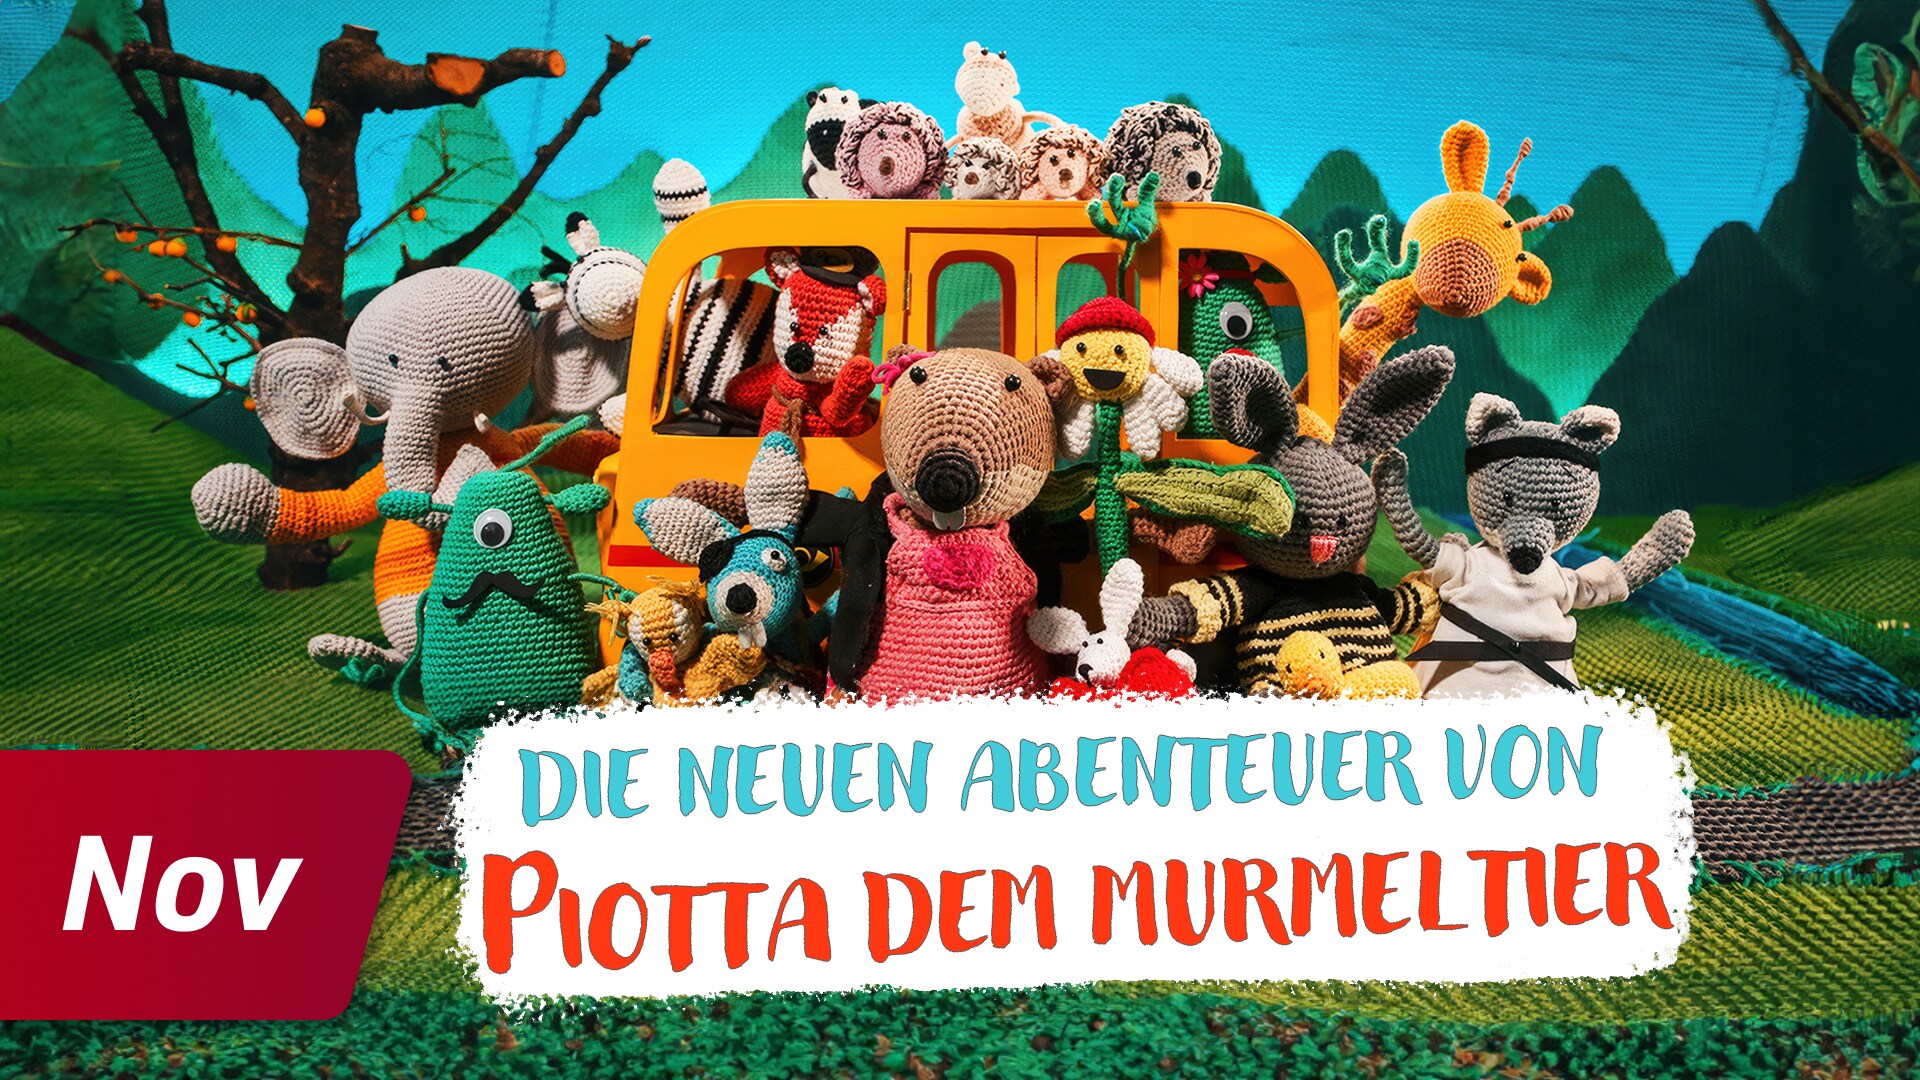 Die neuen Abenteuer von Piotta dem Murmeltier